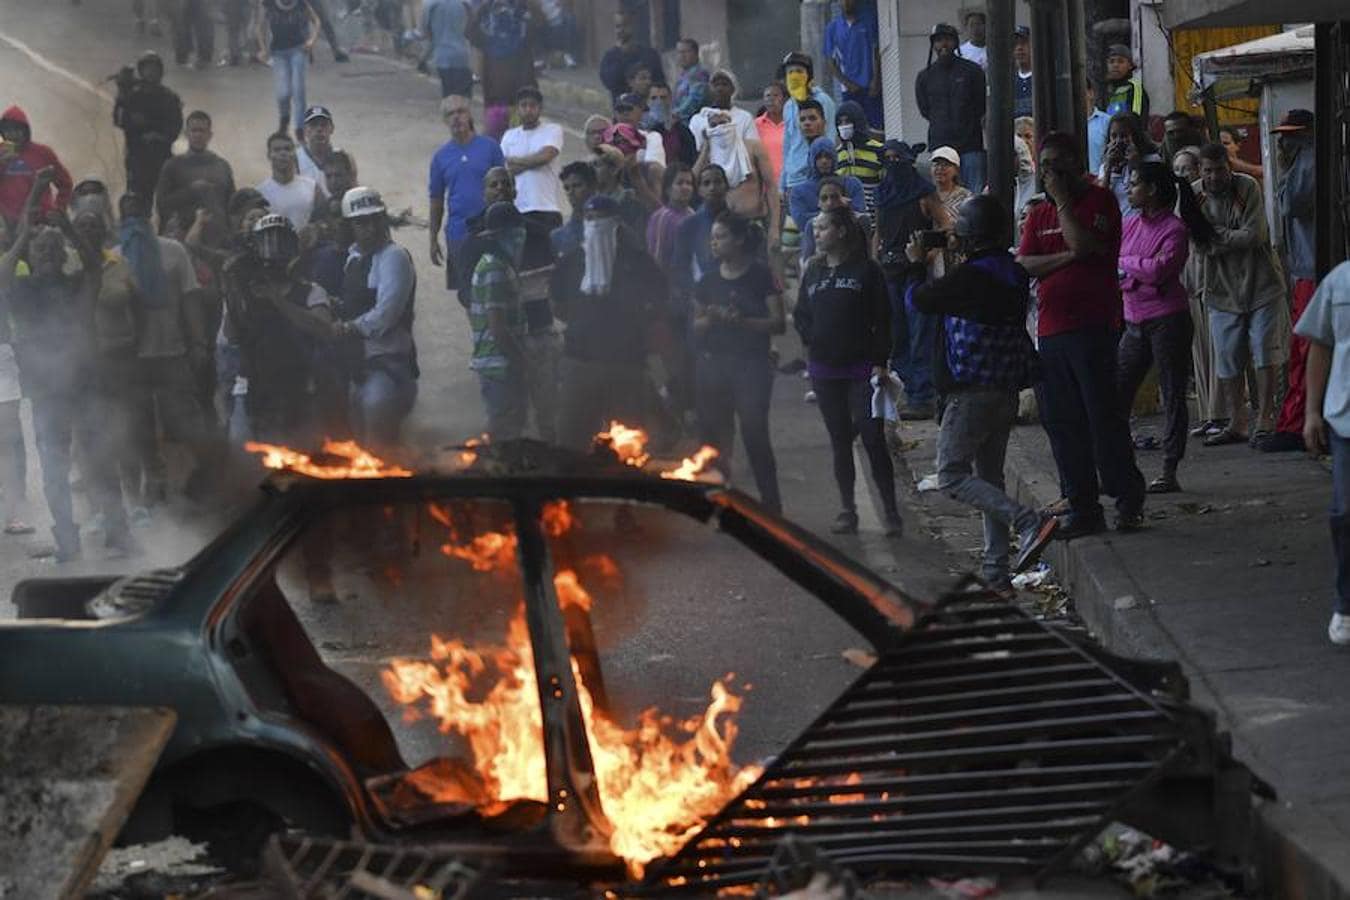 Las imágenes más dramáticas de la sublevación militar en Venezuela. En primer plano, un coche ardiendo; al fondo, manfestantes del barrio de Cotiza